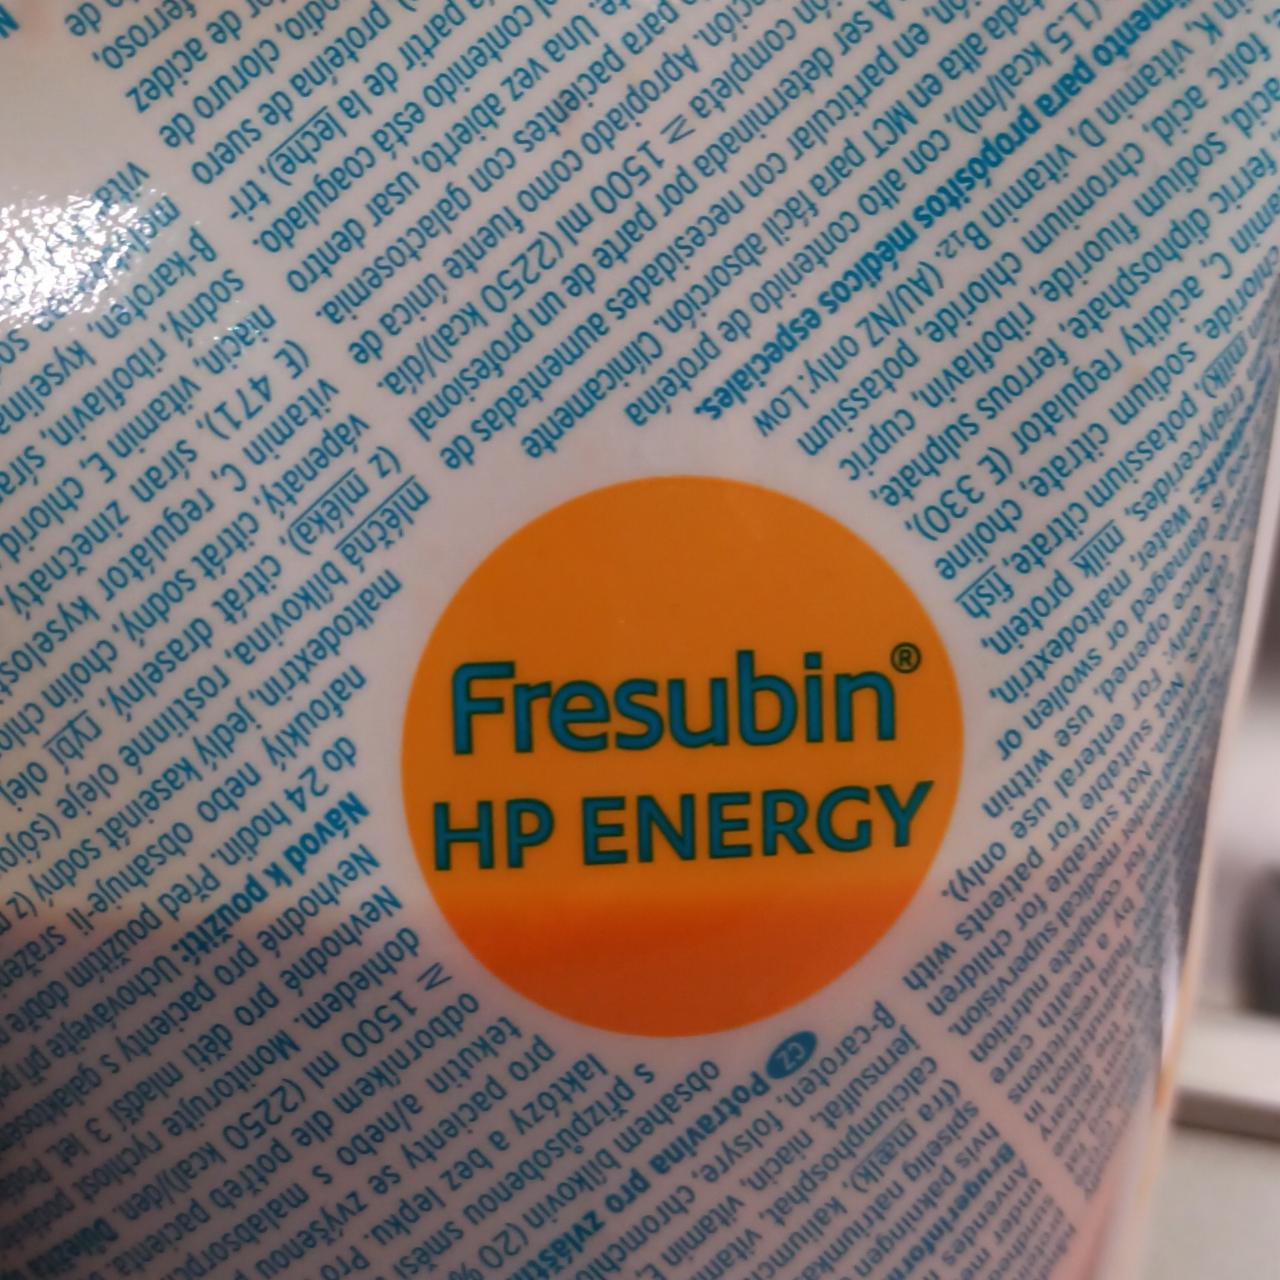 Fotografie - HP Energy Fresubin